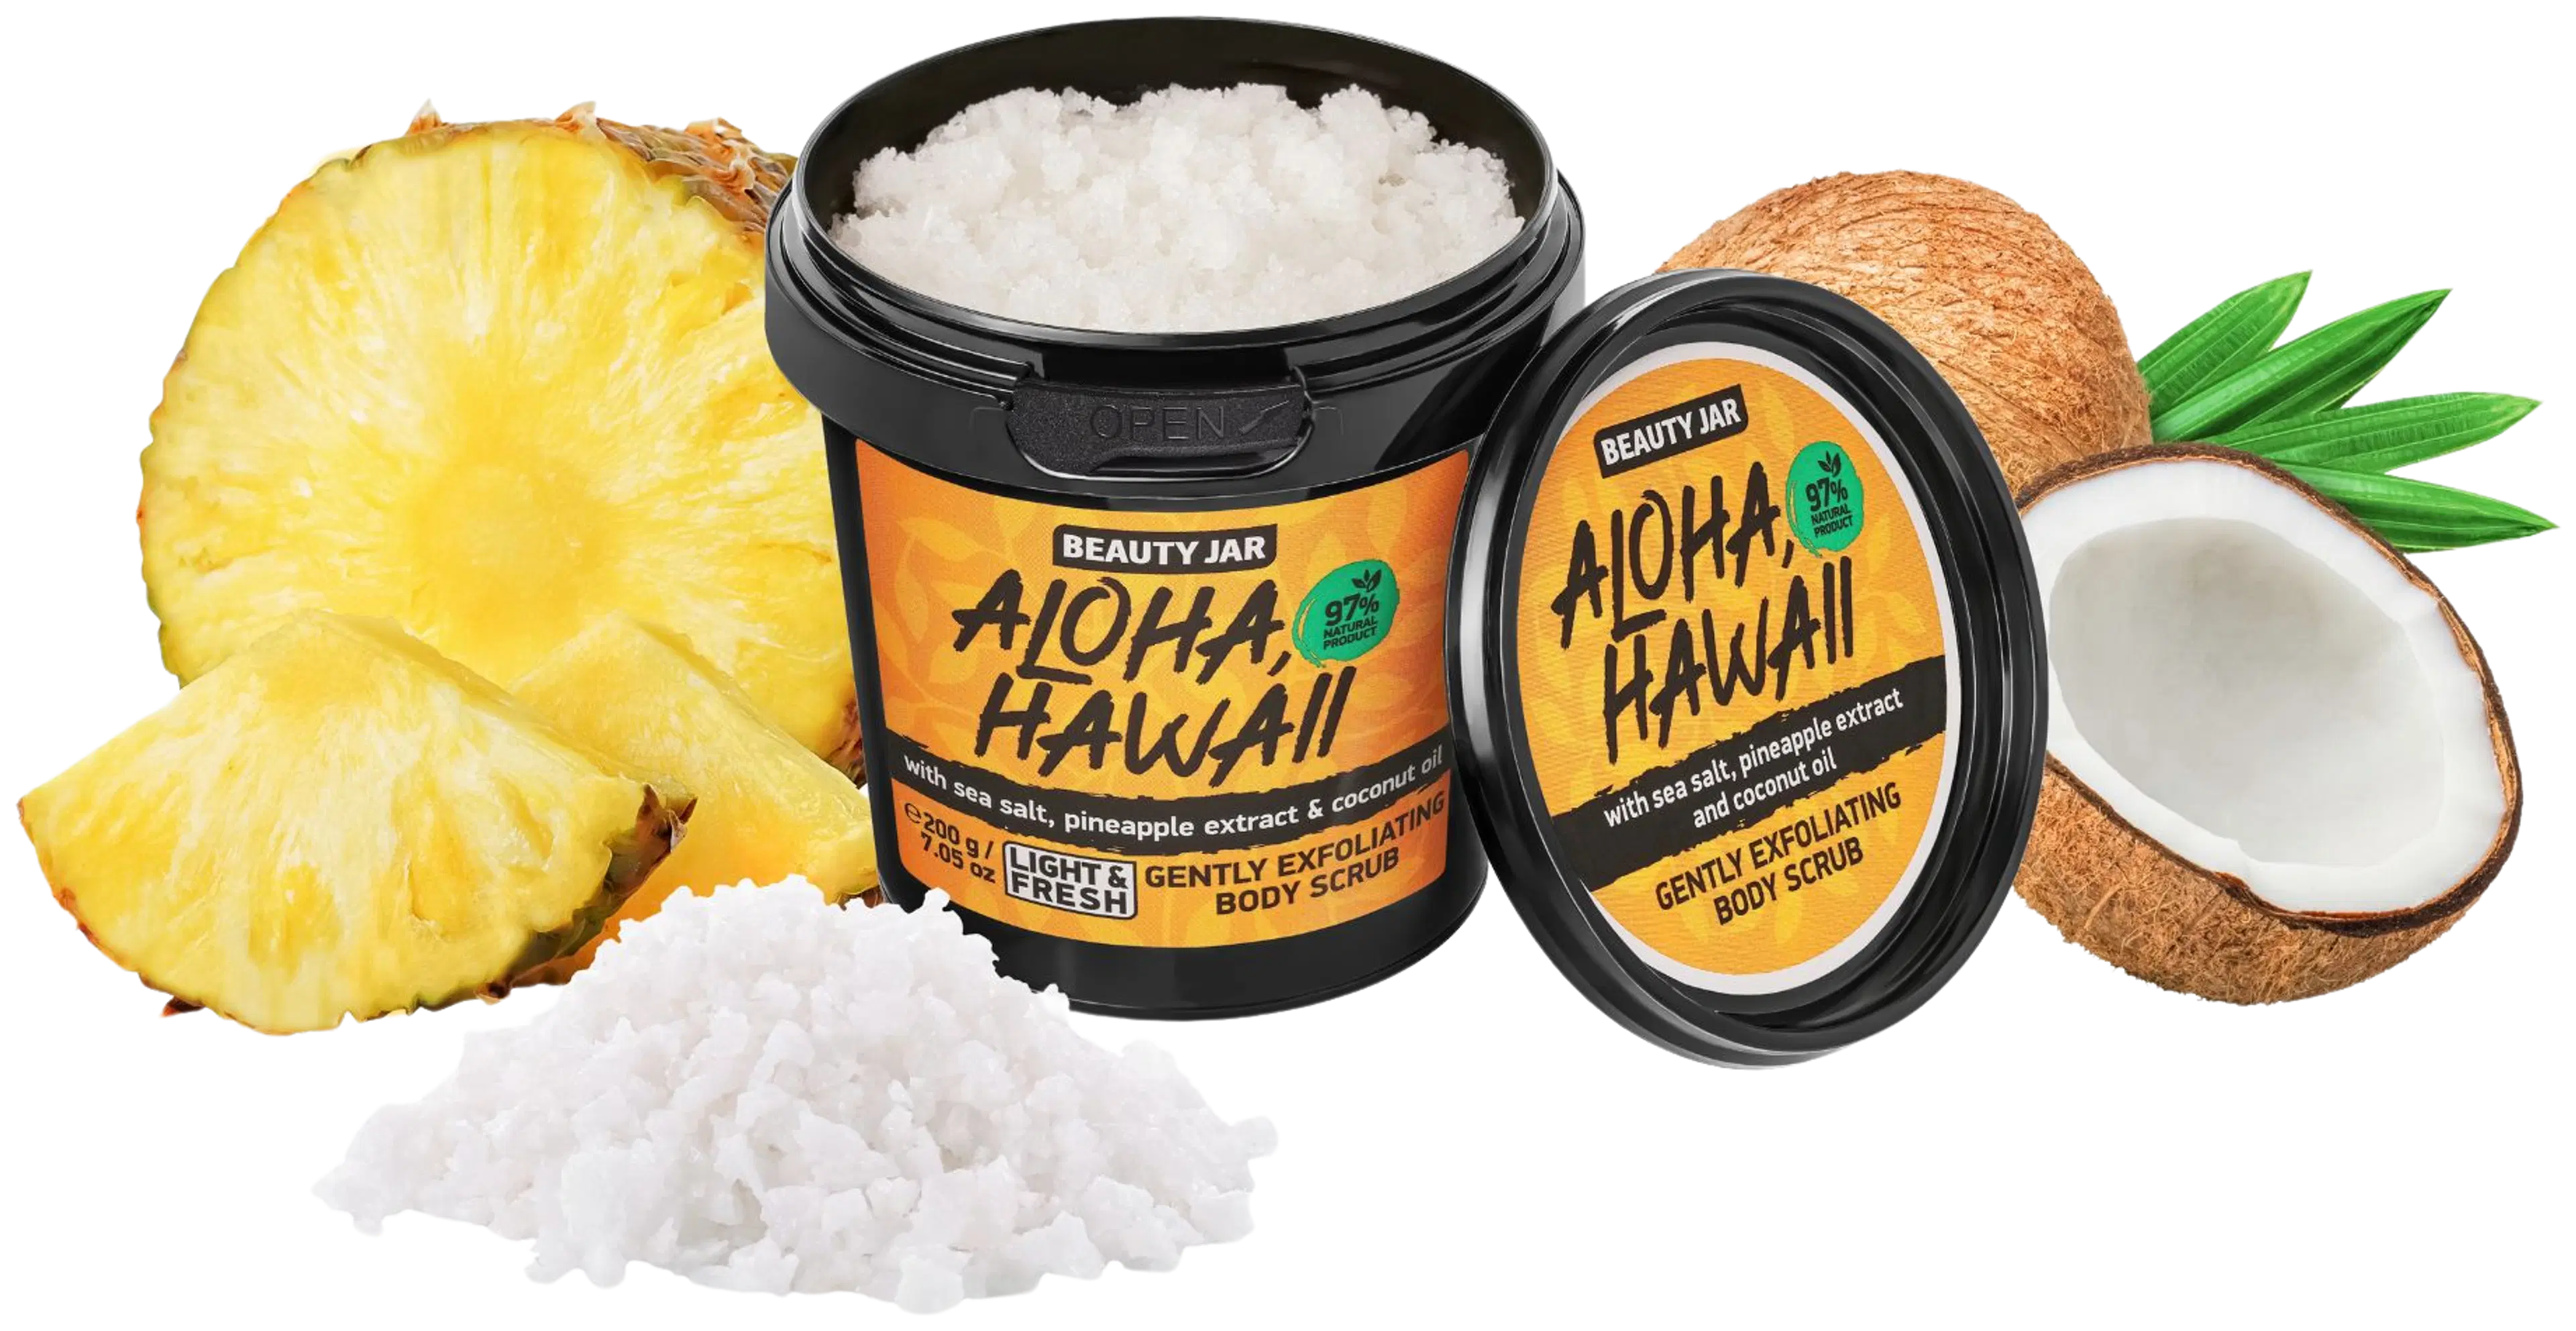 Beauty Jar Aloha, Hawaii Body Scrub vartalokuorinta 200 g